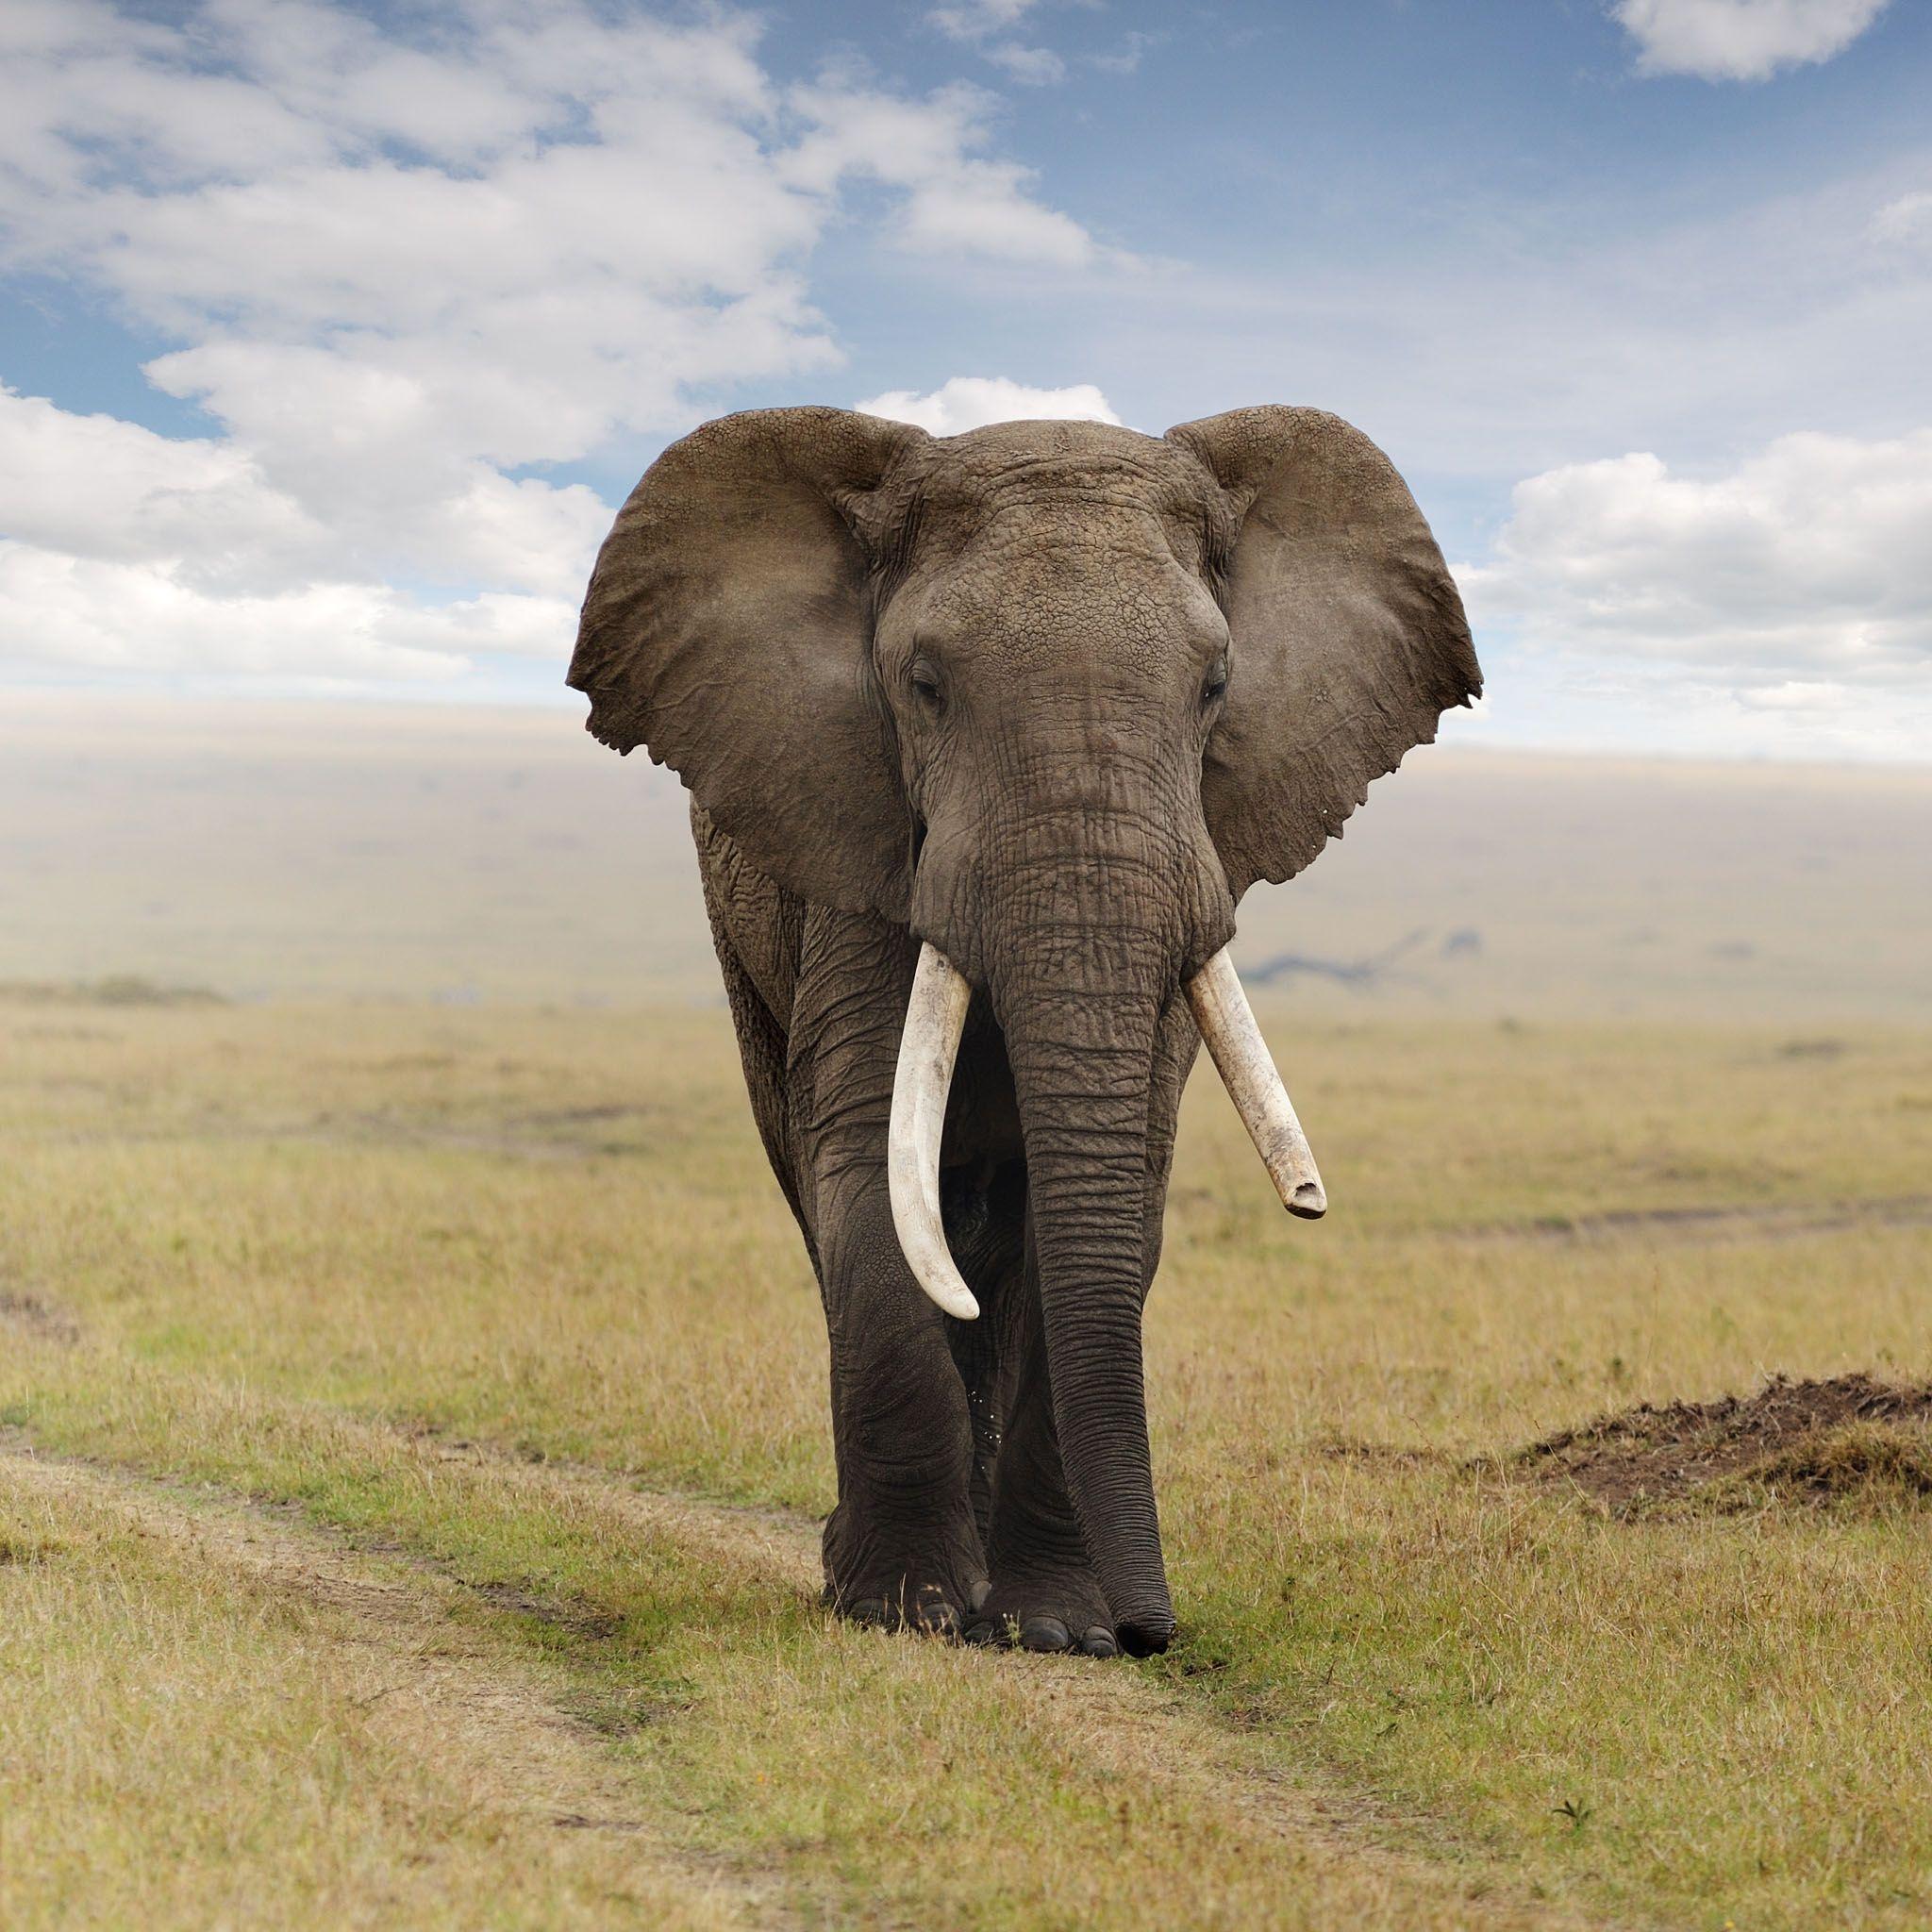 Elephant Image. Elephant. African bush elephant